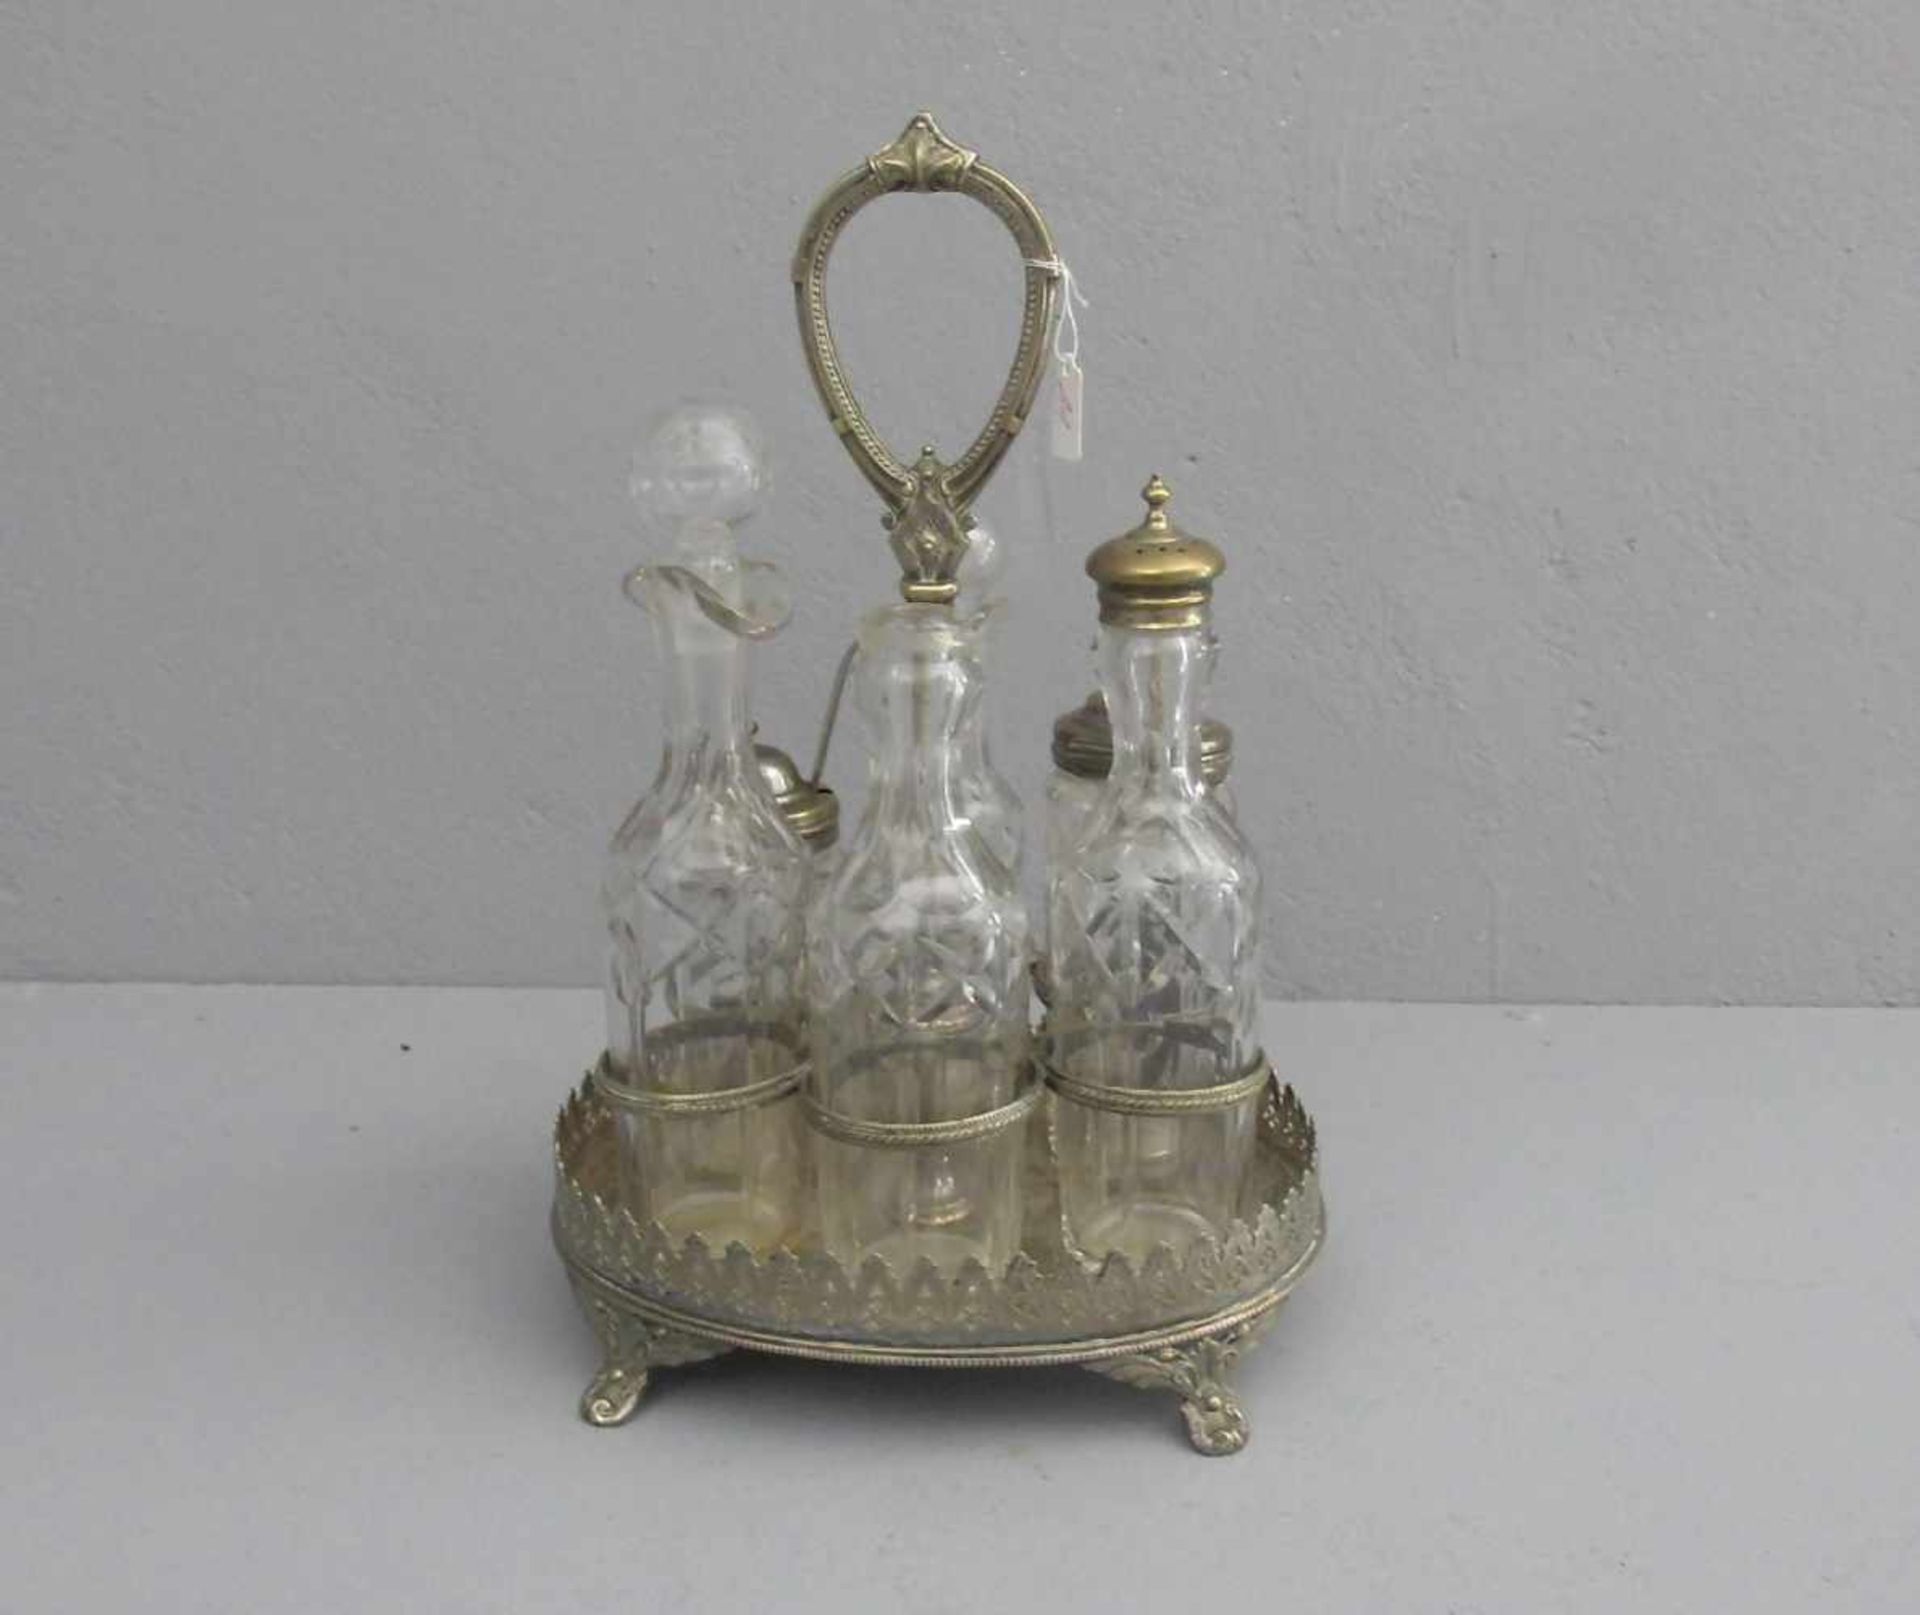 VERSILBERTE MENAGE MIT SECHS GLASBEHÄTERN, um 1900, England, versilbertes Metall und Glas, gemarkt